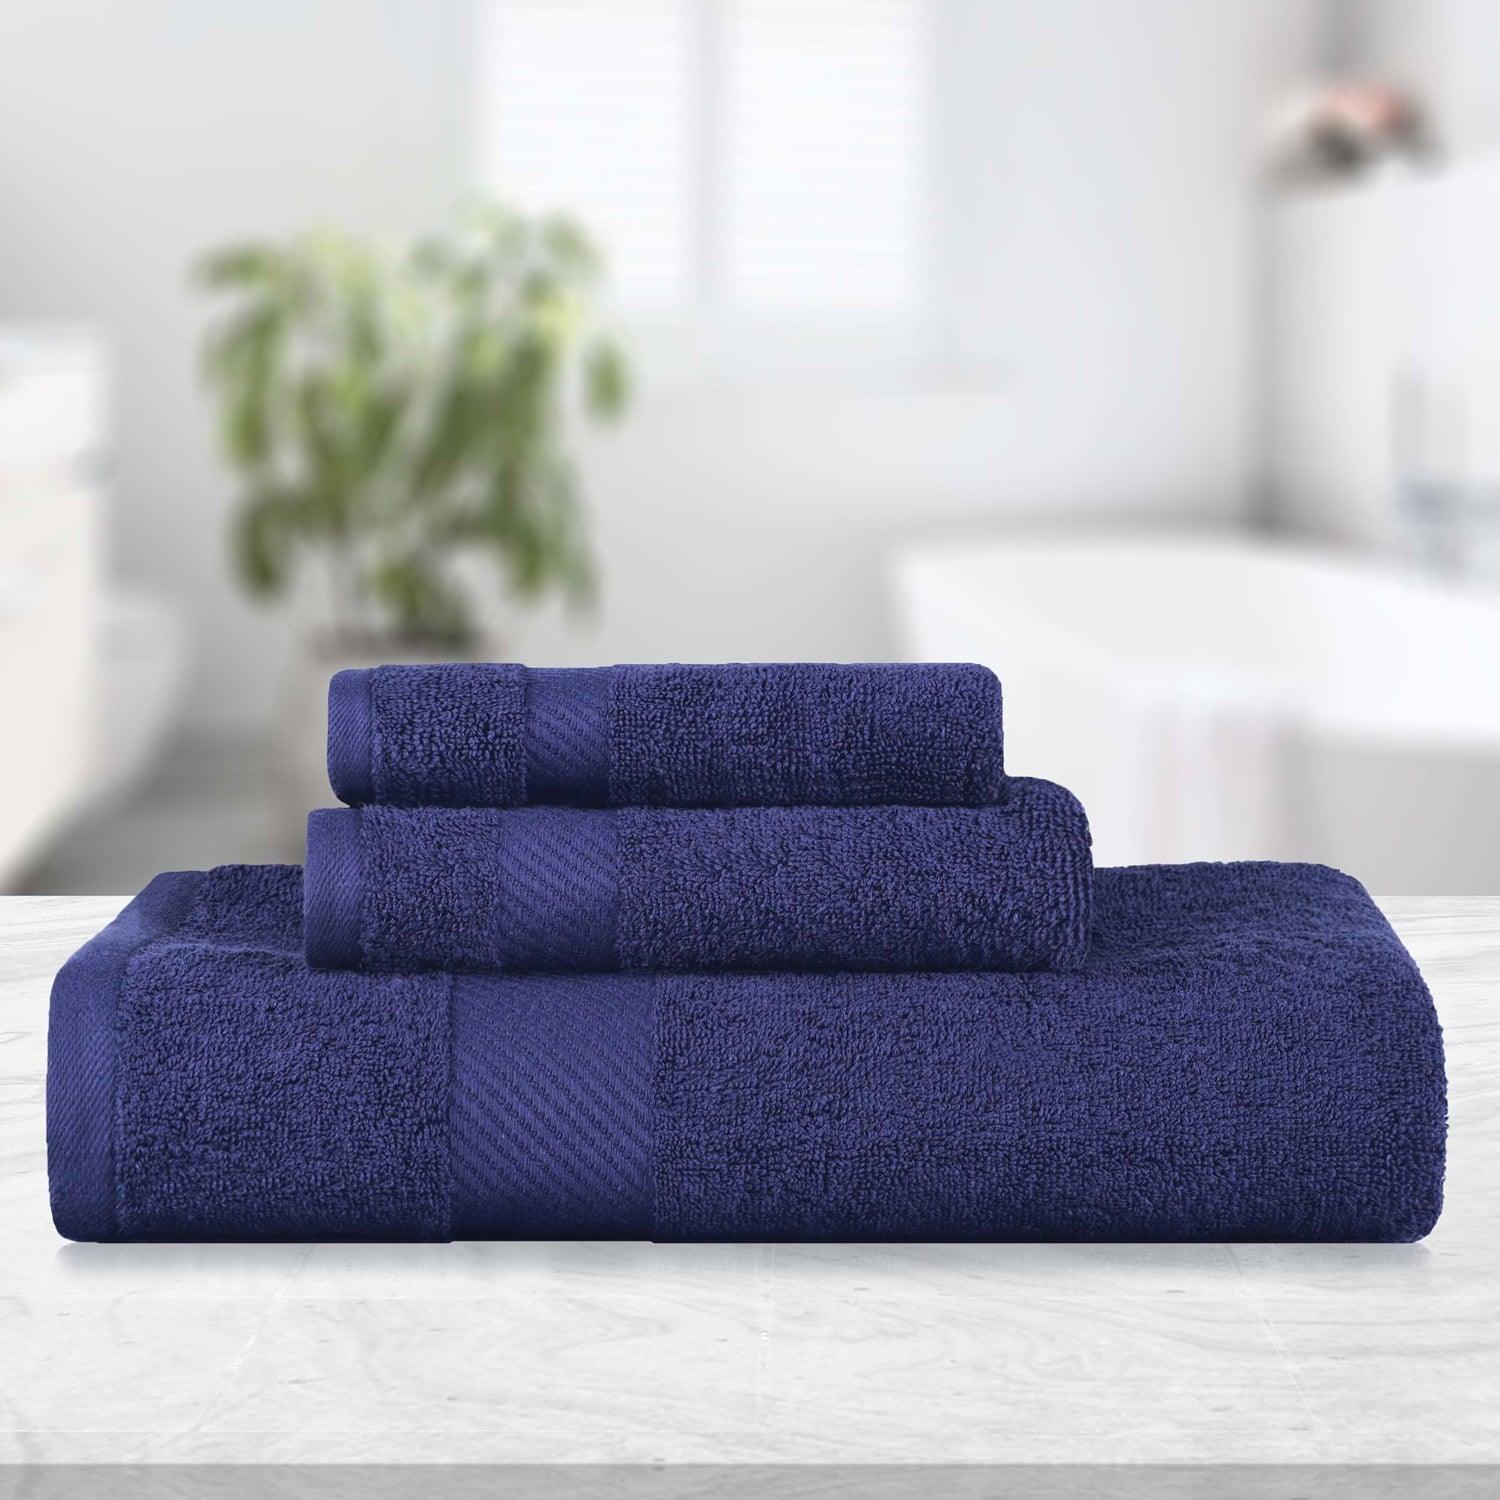 3PCS Towel Set Solid Color Cotton Large Thick Bath Towel Bathroom Hand Face  Shower Towels Home